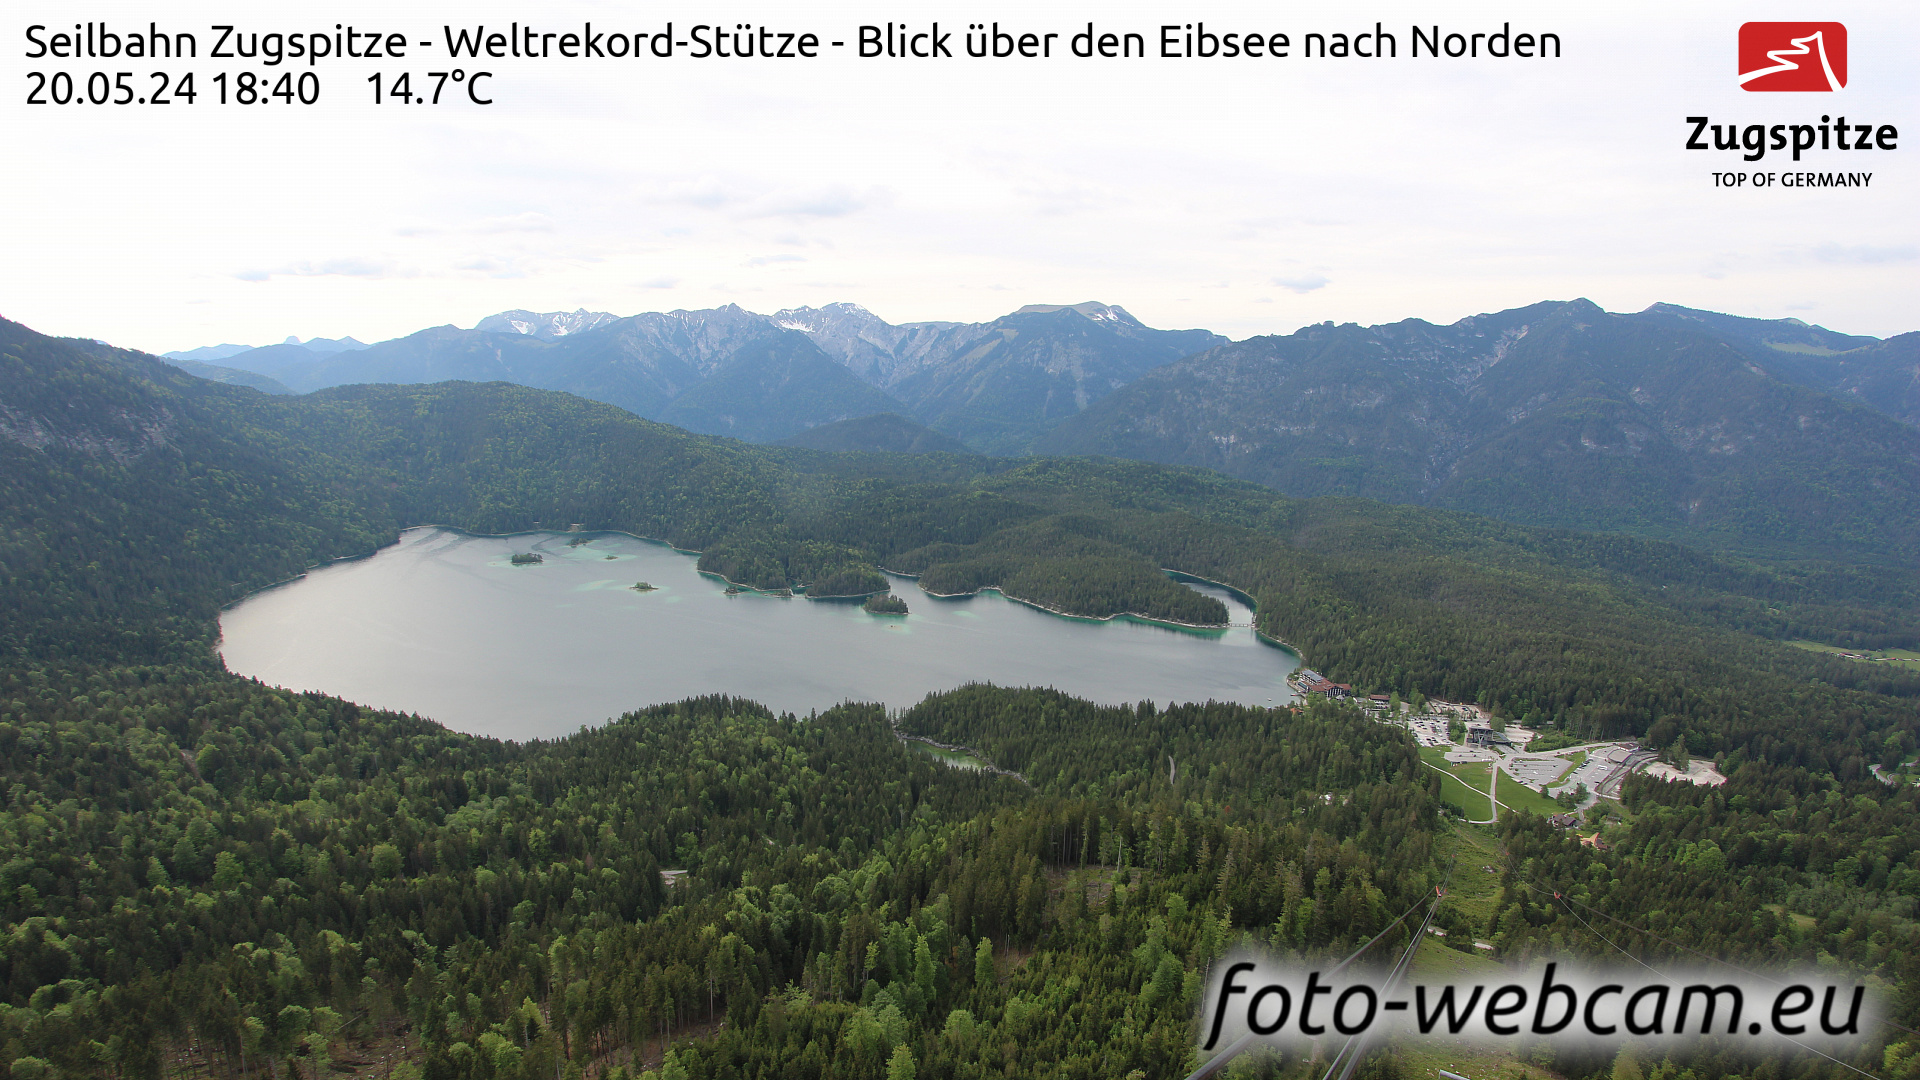 Zugspitze Wed. 18:49